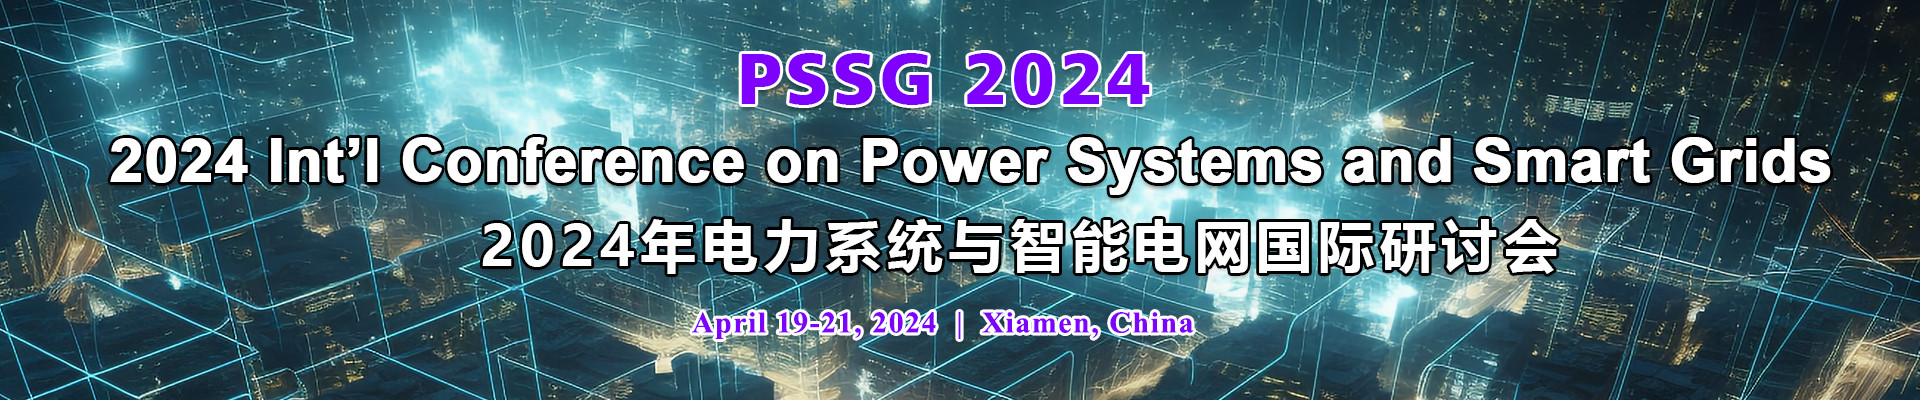 2024年电力系统与智能电网国际研讨会(PSSG 2024)